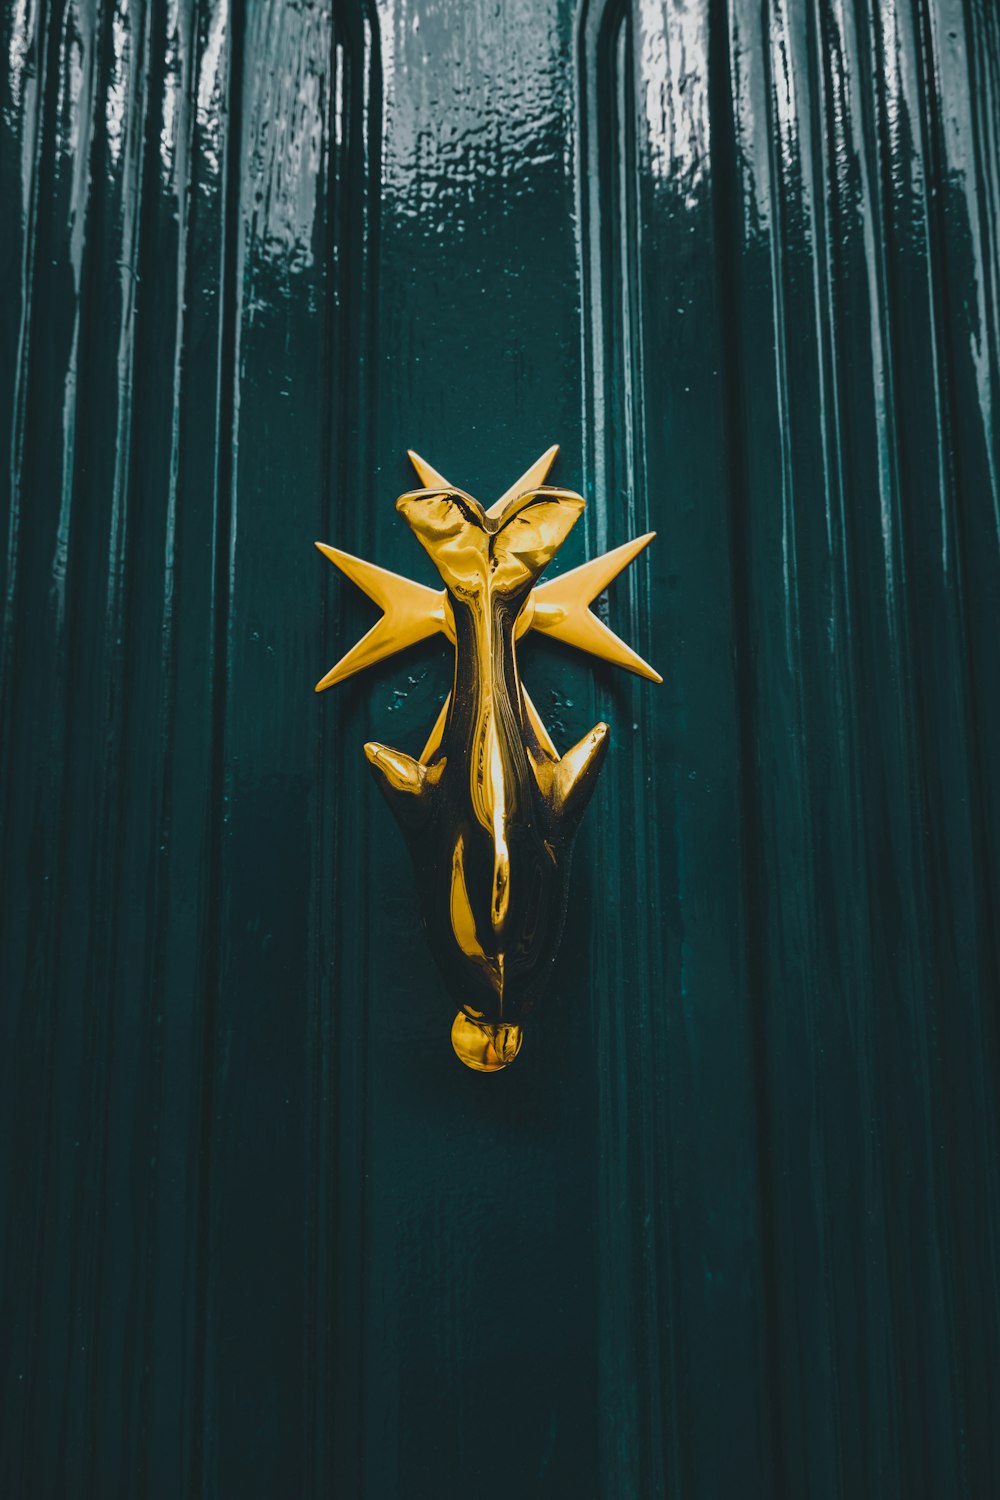 a green door with a gold door knocker on it